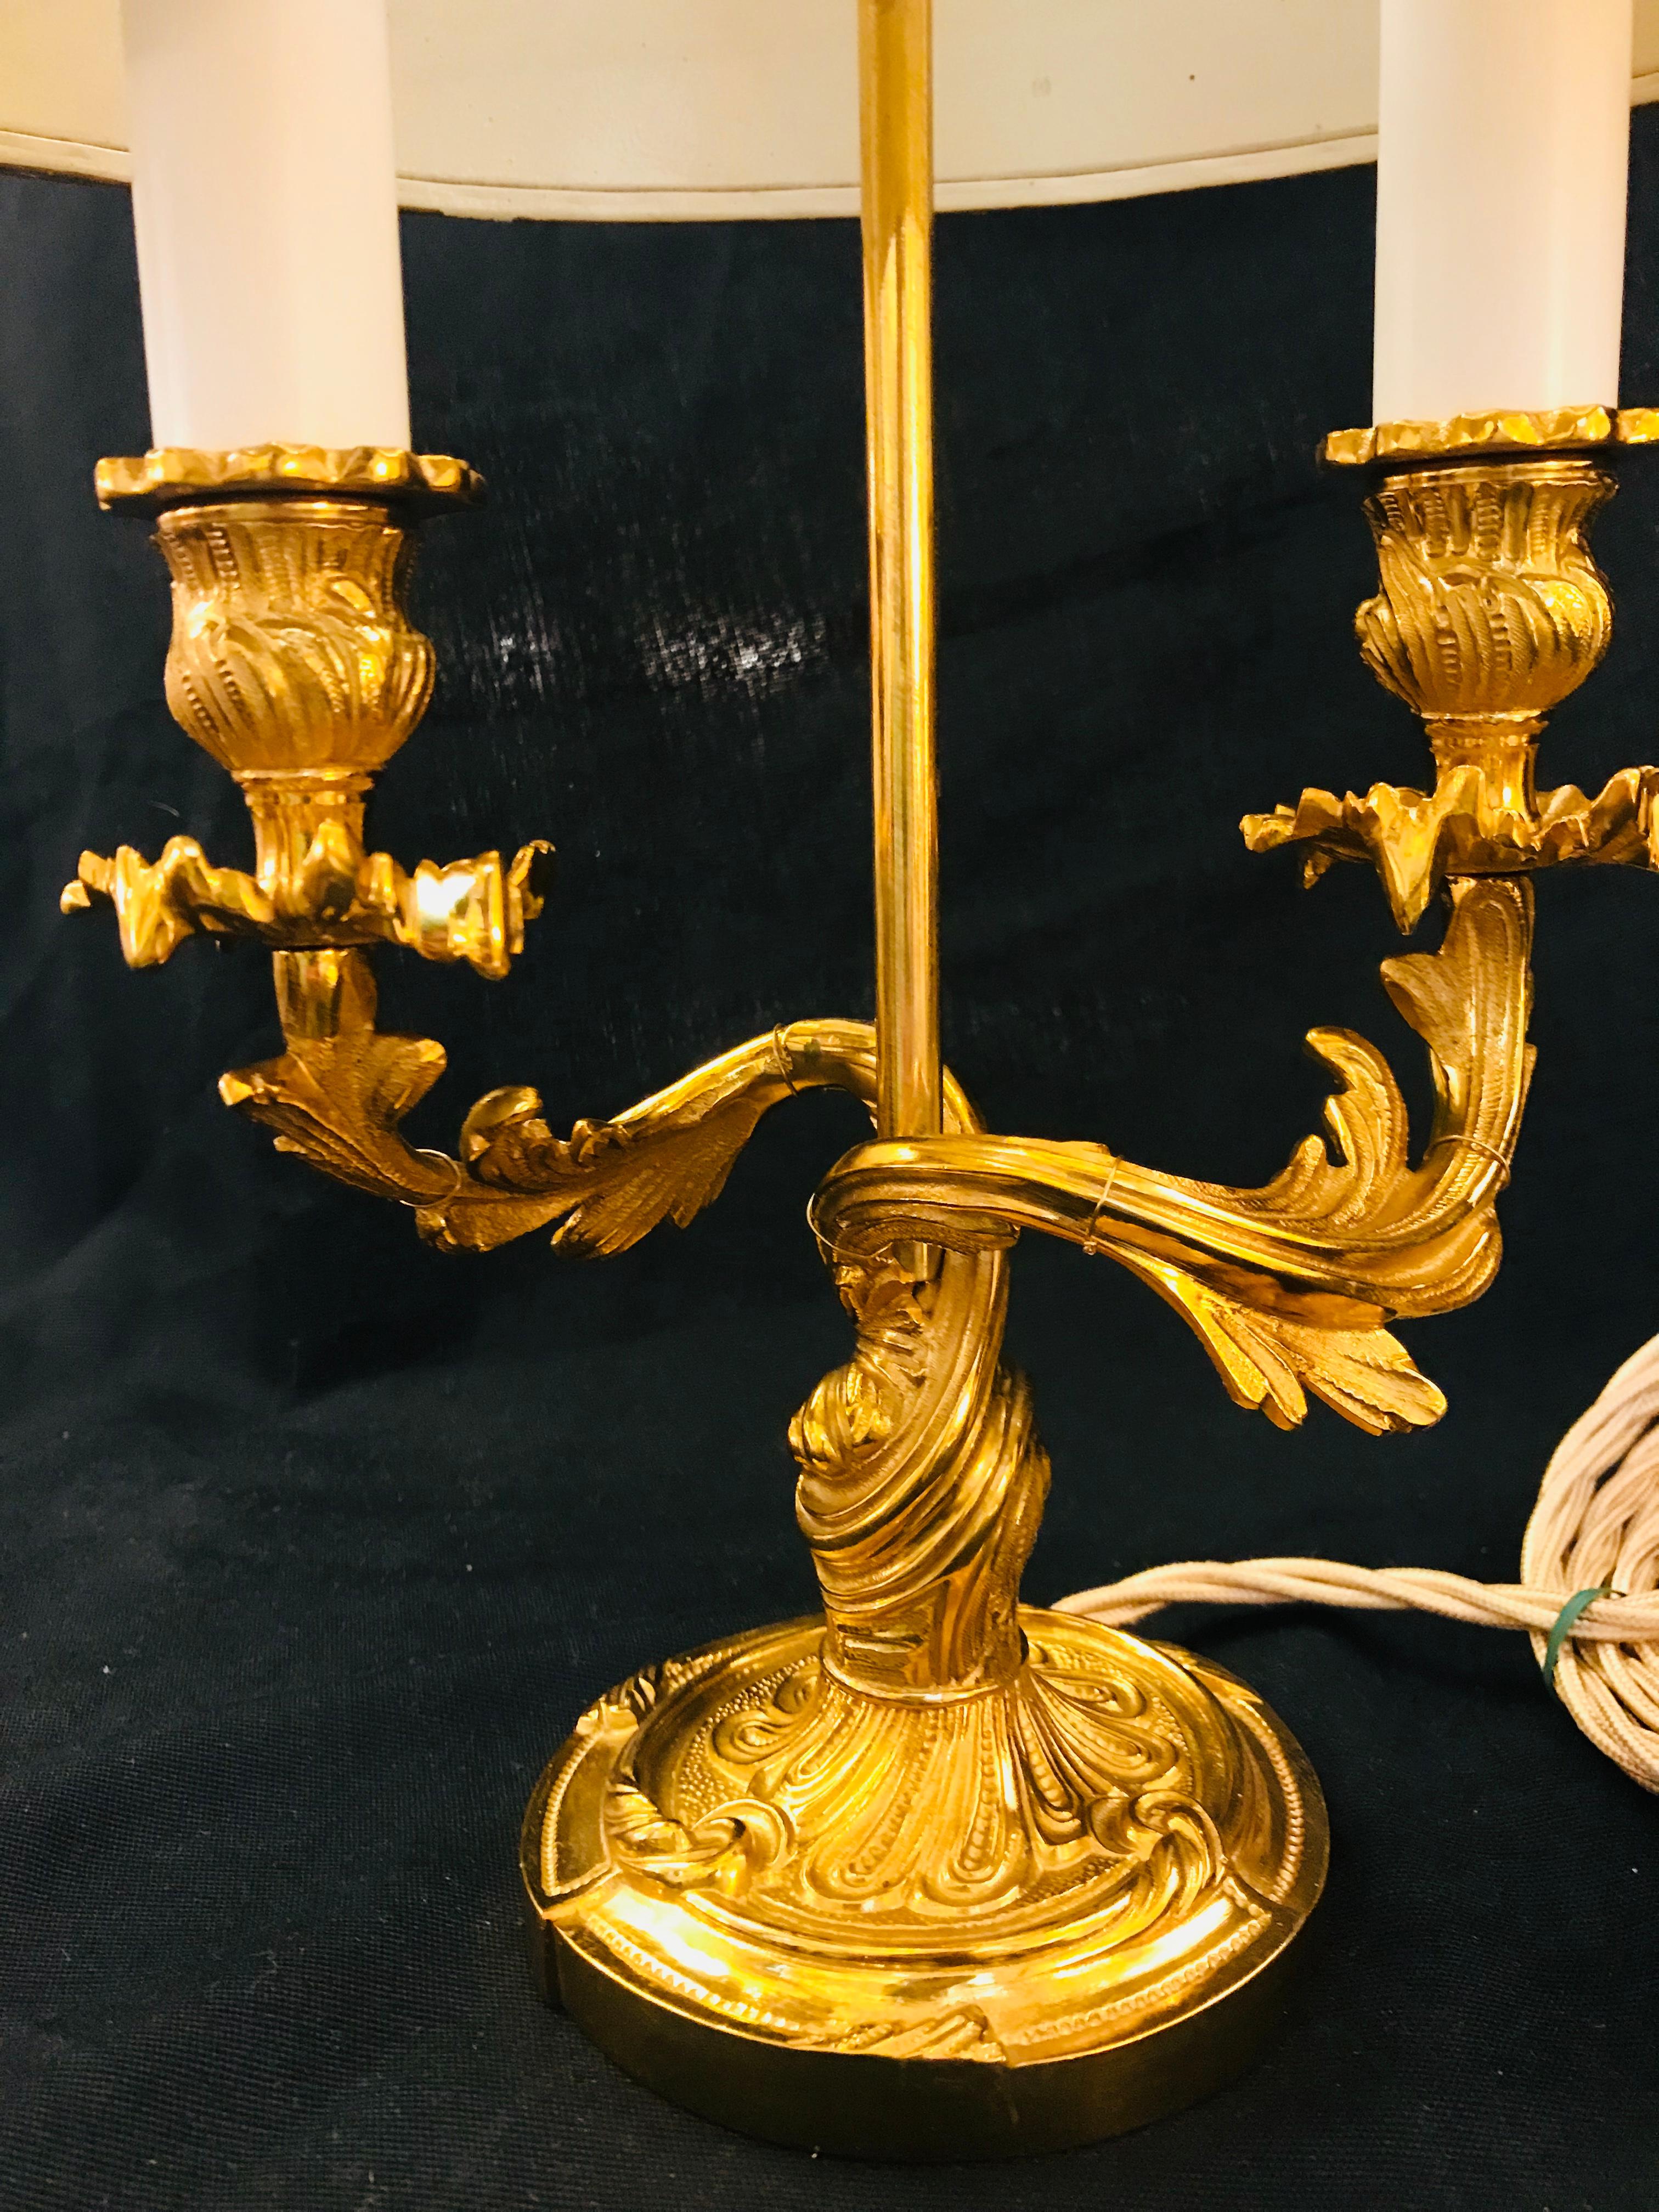 Cette lampe en bronze doré de style Louis XV reprend le goût de la décoration de l'époque rococo. Les motifs végétaux sont omniprésents dans cette pièce, dont les formes sont d'une grande élégance et d'une grande opulence. La tige présente des